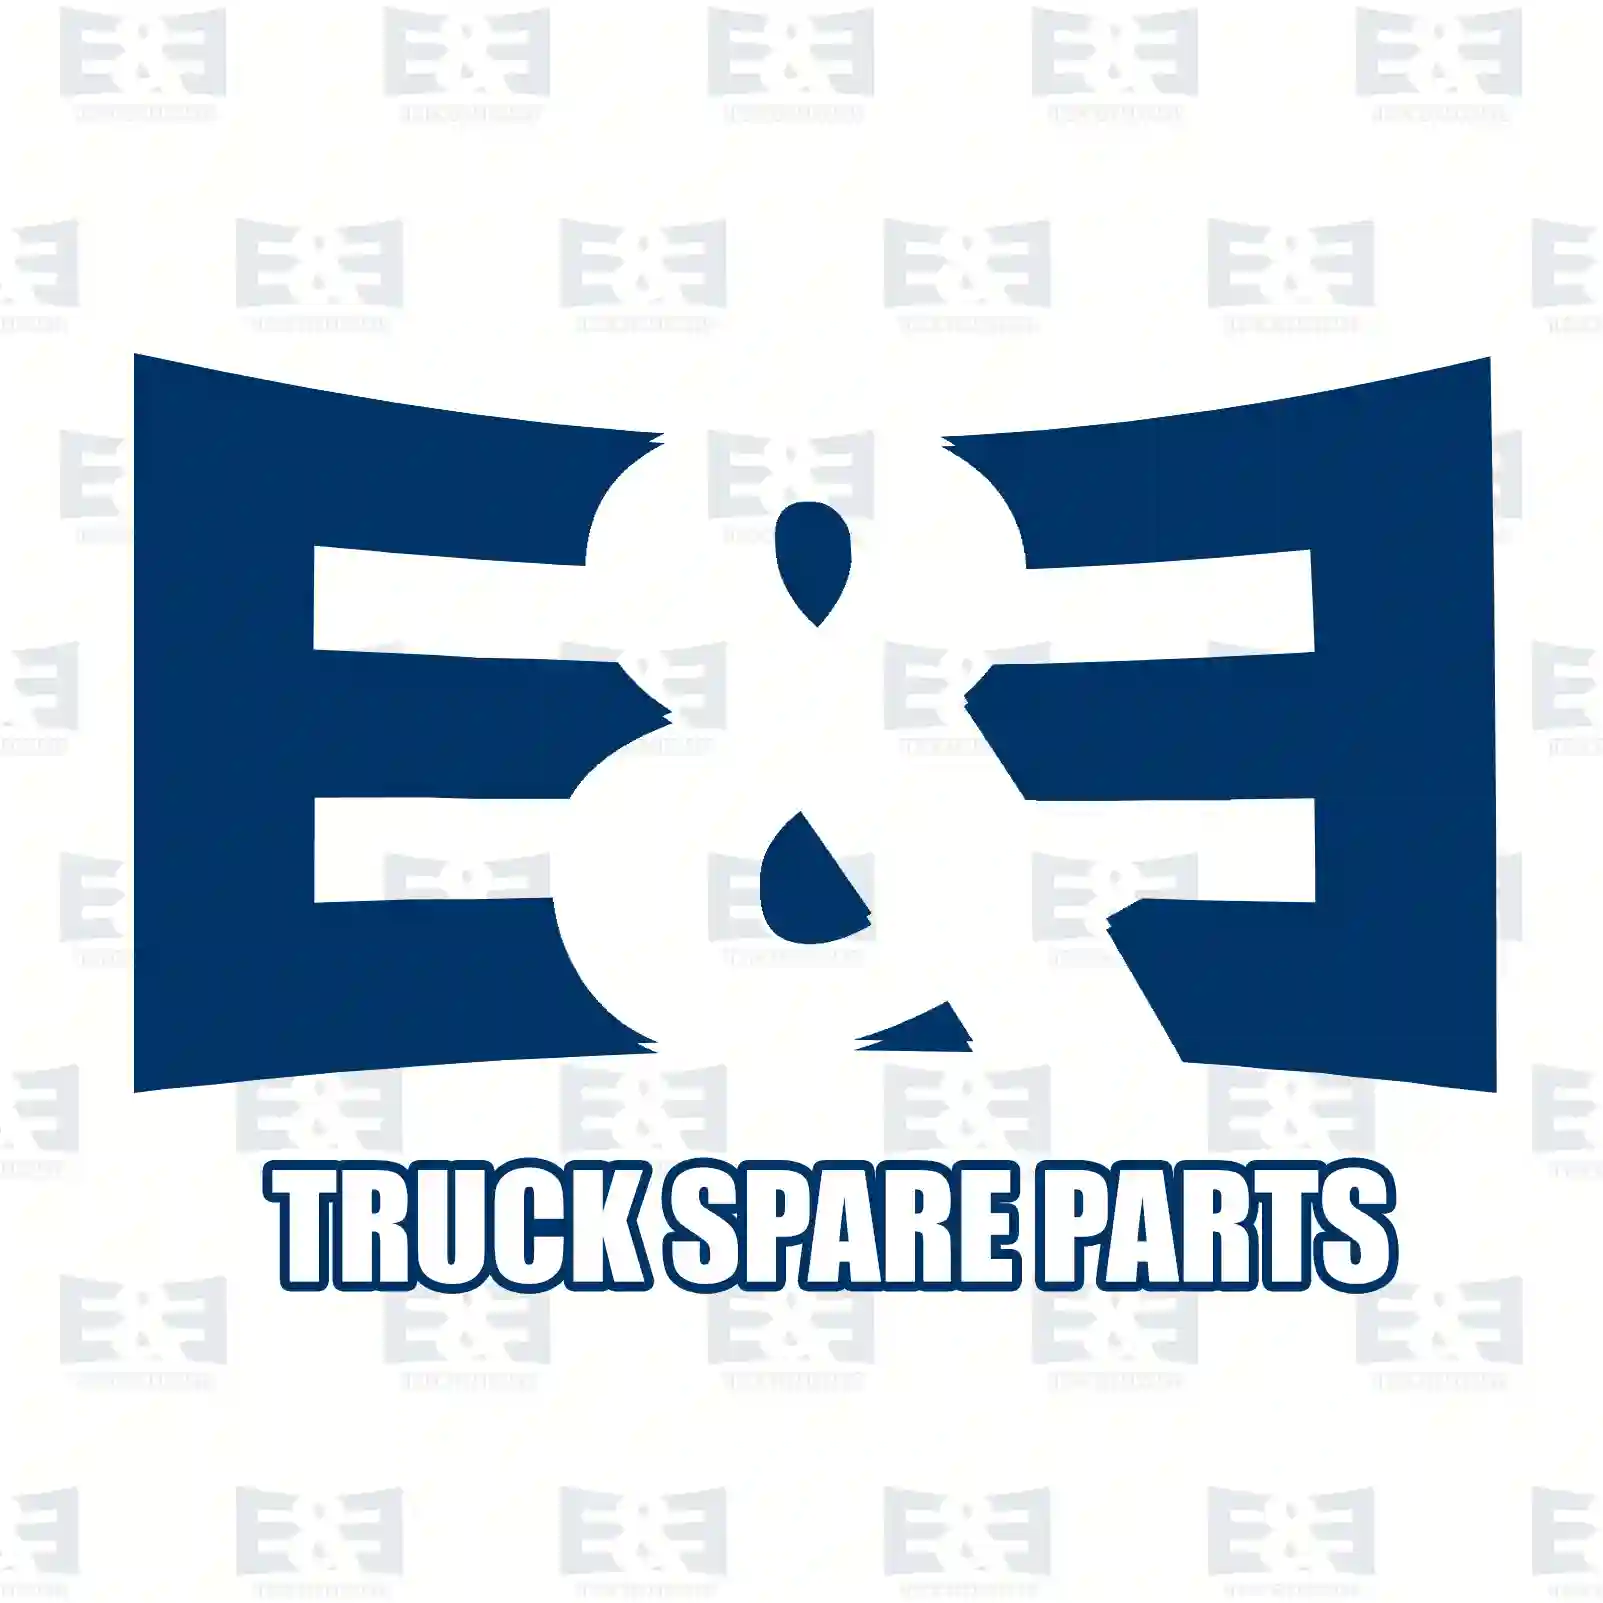 Valve, exhaust gas recirculation, 2E2200403, 1148330, 1151774, 1333574, 1446265, 2S7Q-9D475-BA, 2S7Q-9D475-BB, 2S7Q-9D475-BC, 2S7Q-9D475-BD, 14941, EGR101, ERV005 ||  2E2200403 E&E Truck Spare Parts | Truck Spare Parts, Auotomotive Spare Parts Valve, exhaust gas recirculation, 2E2200403, 1148330, 1151774, 1333574, 1446265, 2S7Q-9D475-BA, 2S7Q-9D475-BB, 2S7Q-9D475-BC, 2S7Q-9D475-BD, 14941, EGR101, ERV005 ||  2E2200403 E&E Truck Spare Parts | Truck Spare Parts, Auotomotive Spare Parts